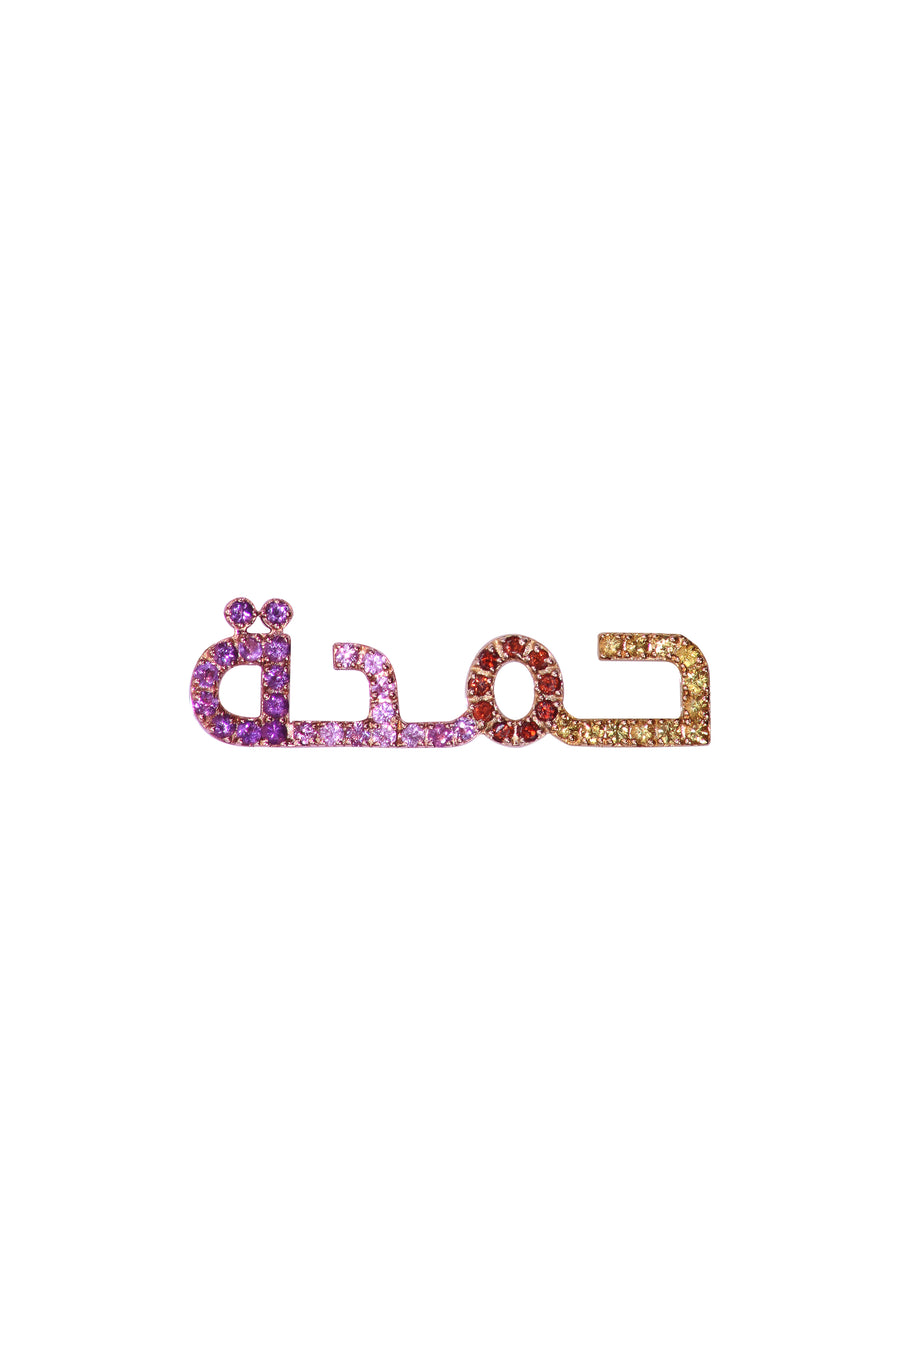 The Cosmic Arabic Name